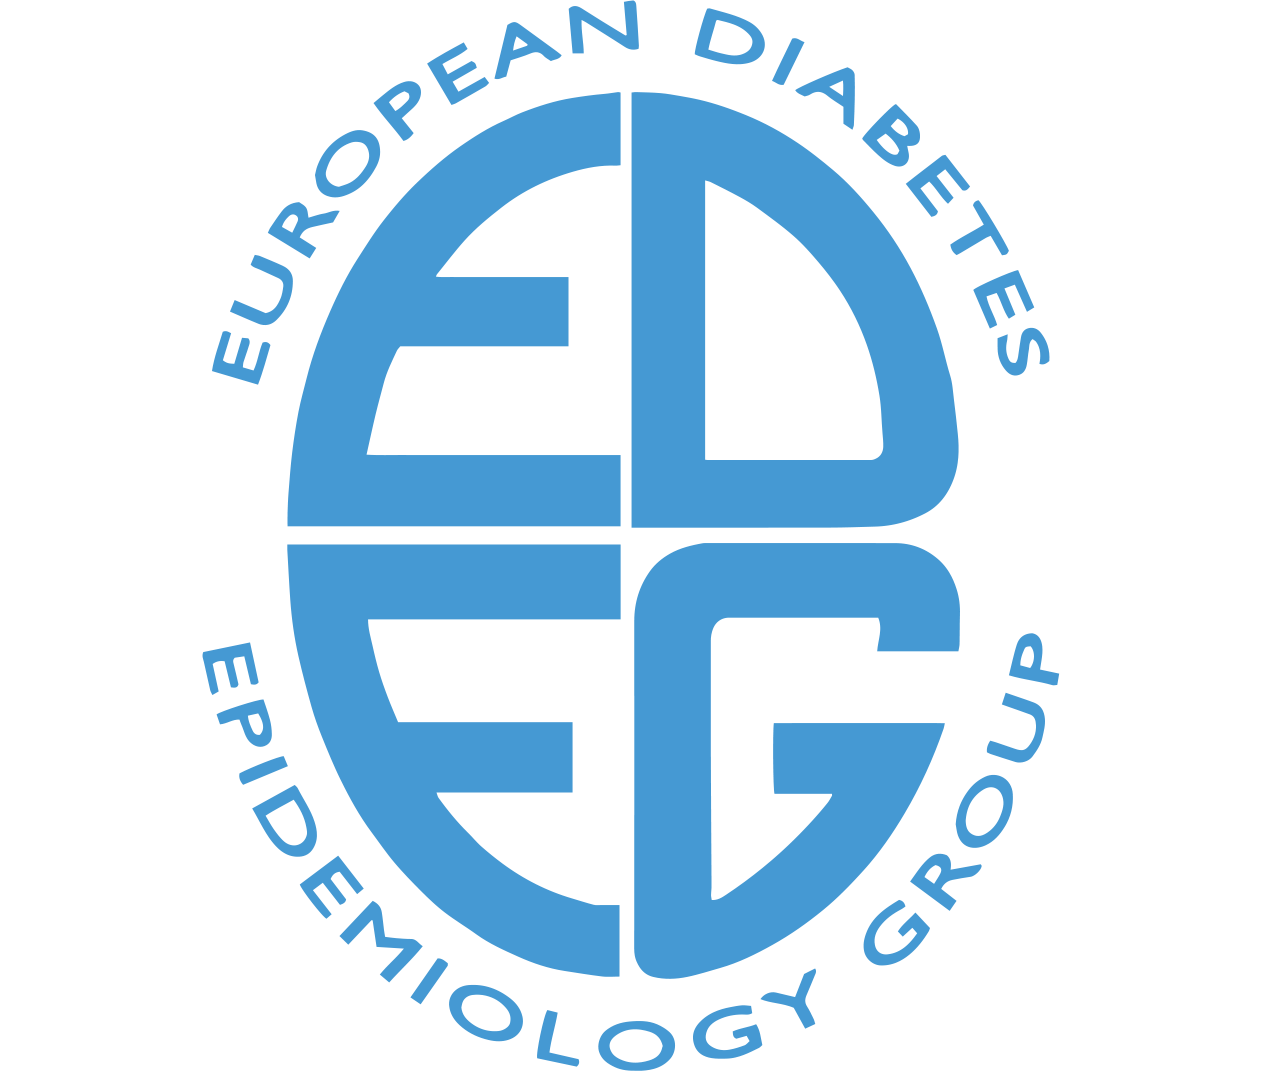 EDEG 2021 VIRTUAL - 55th Annual Meeting of the European Diabetes Epidemiology Group / Virtual